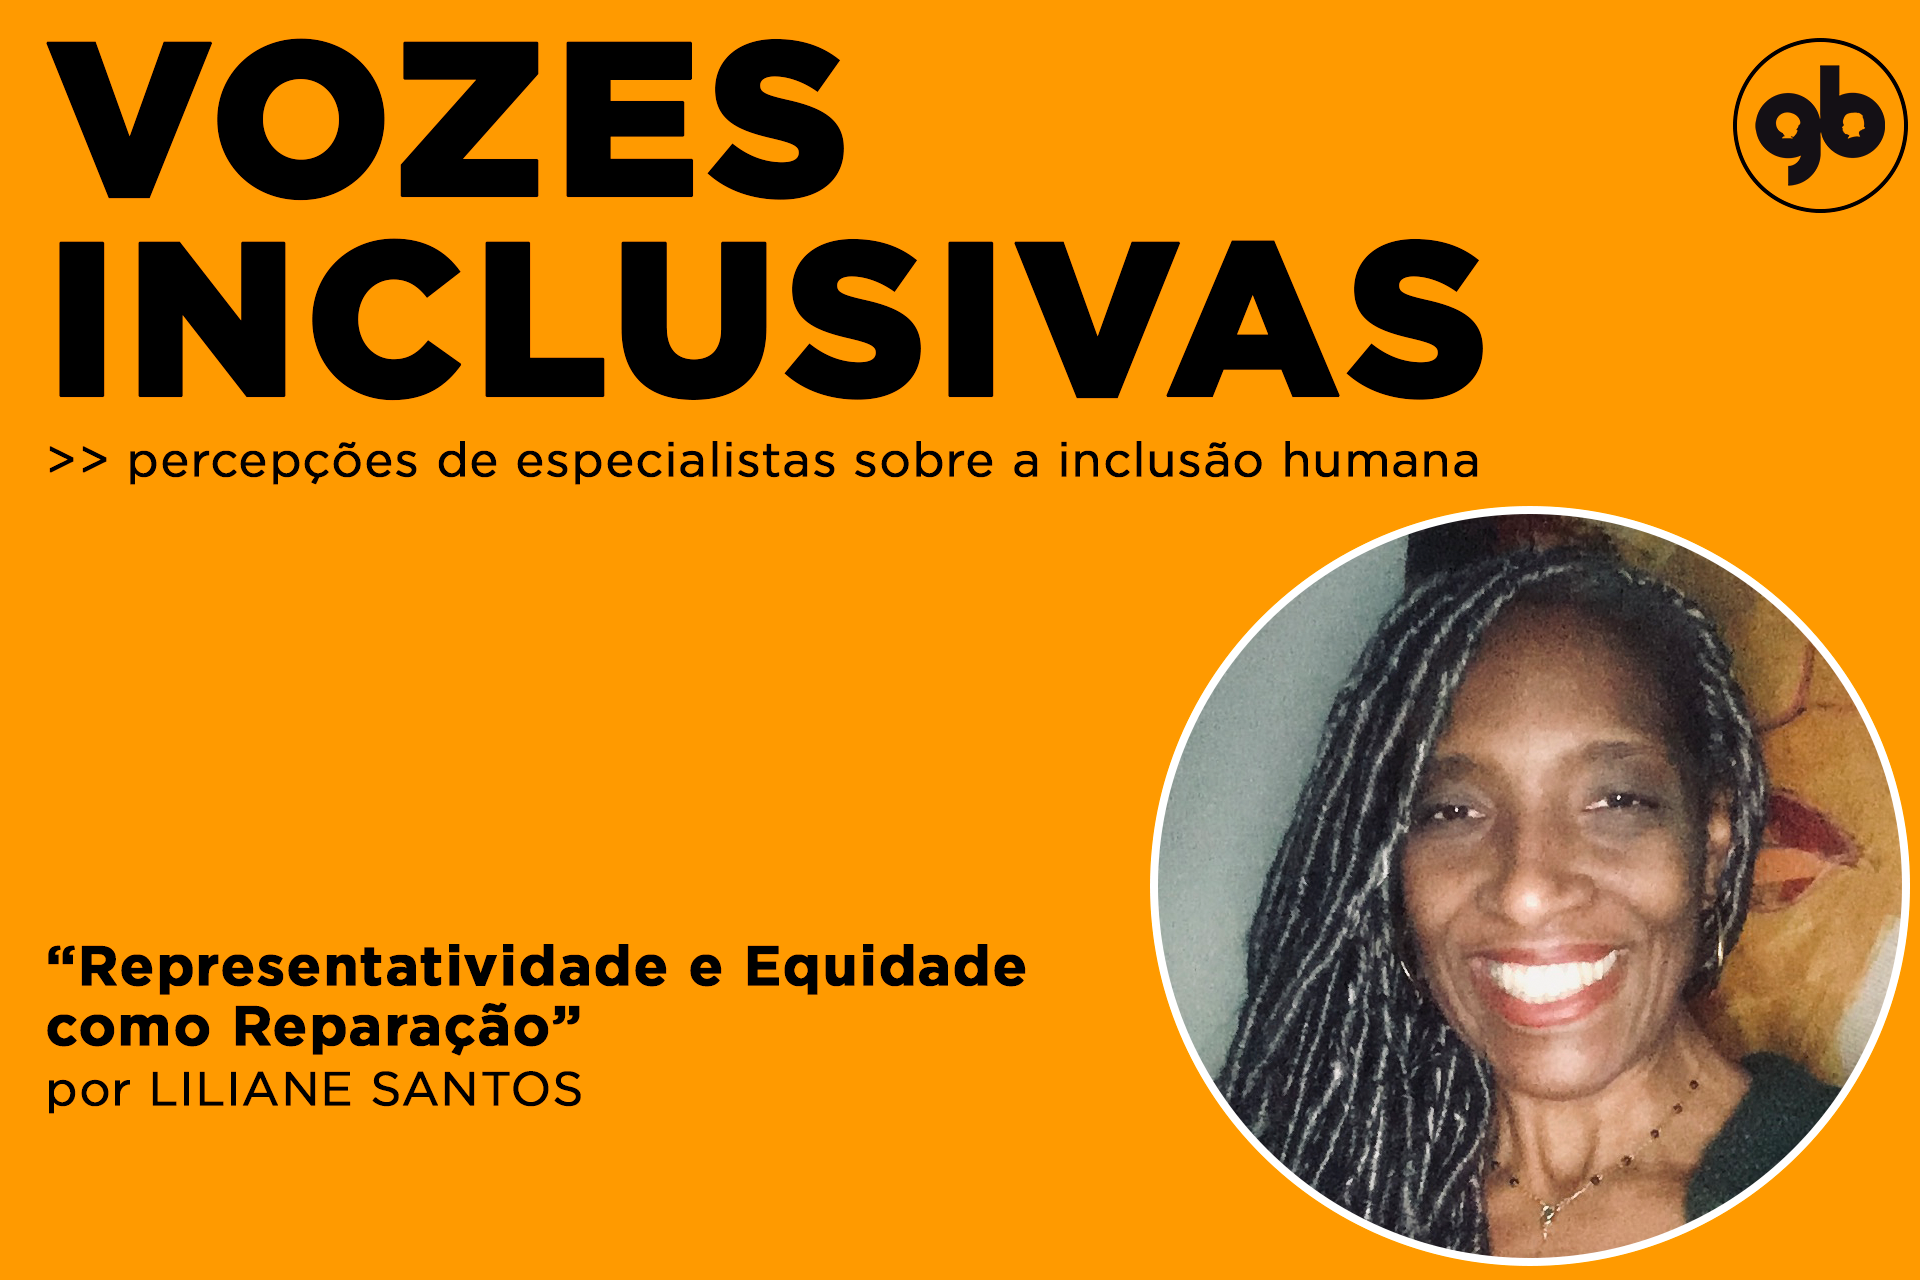 retângulo laranja com textos em preto e foto de Liliane Santos